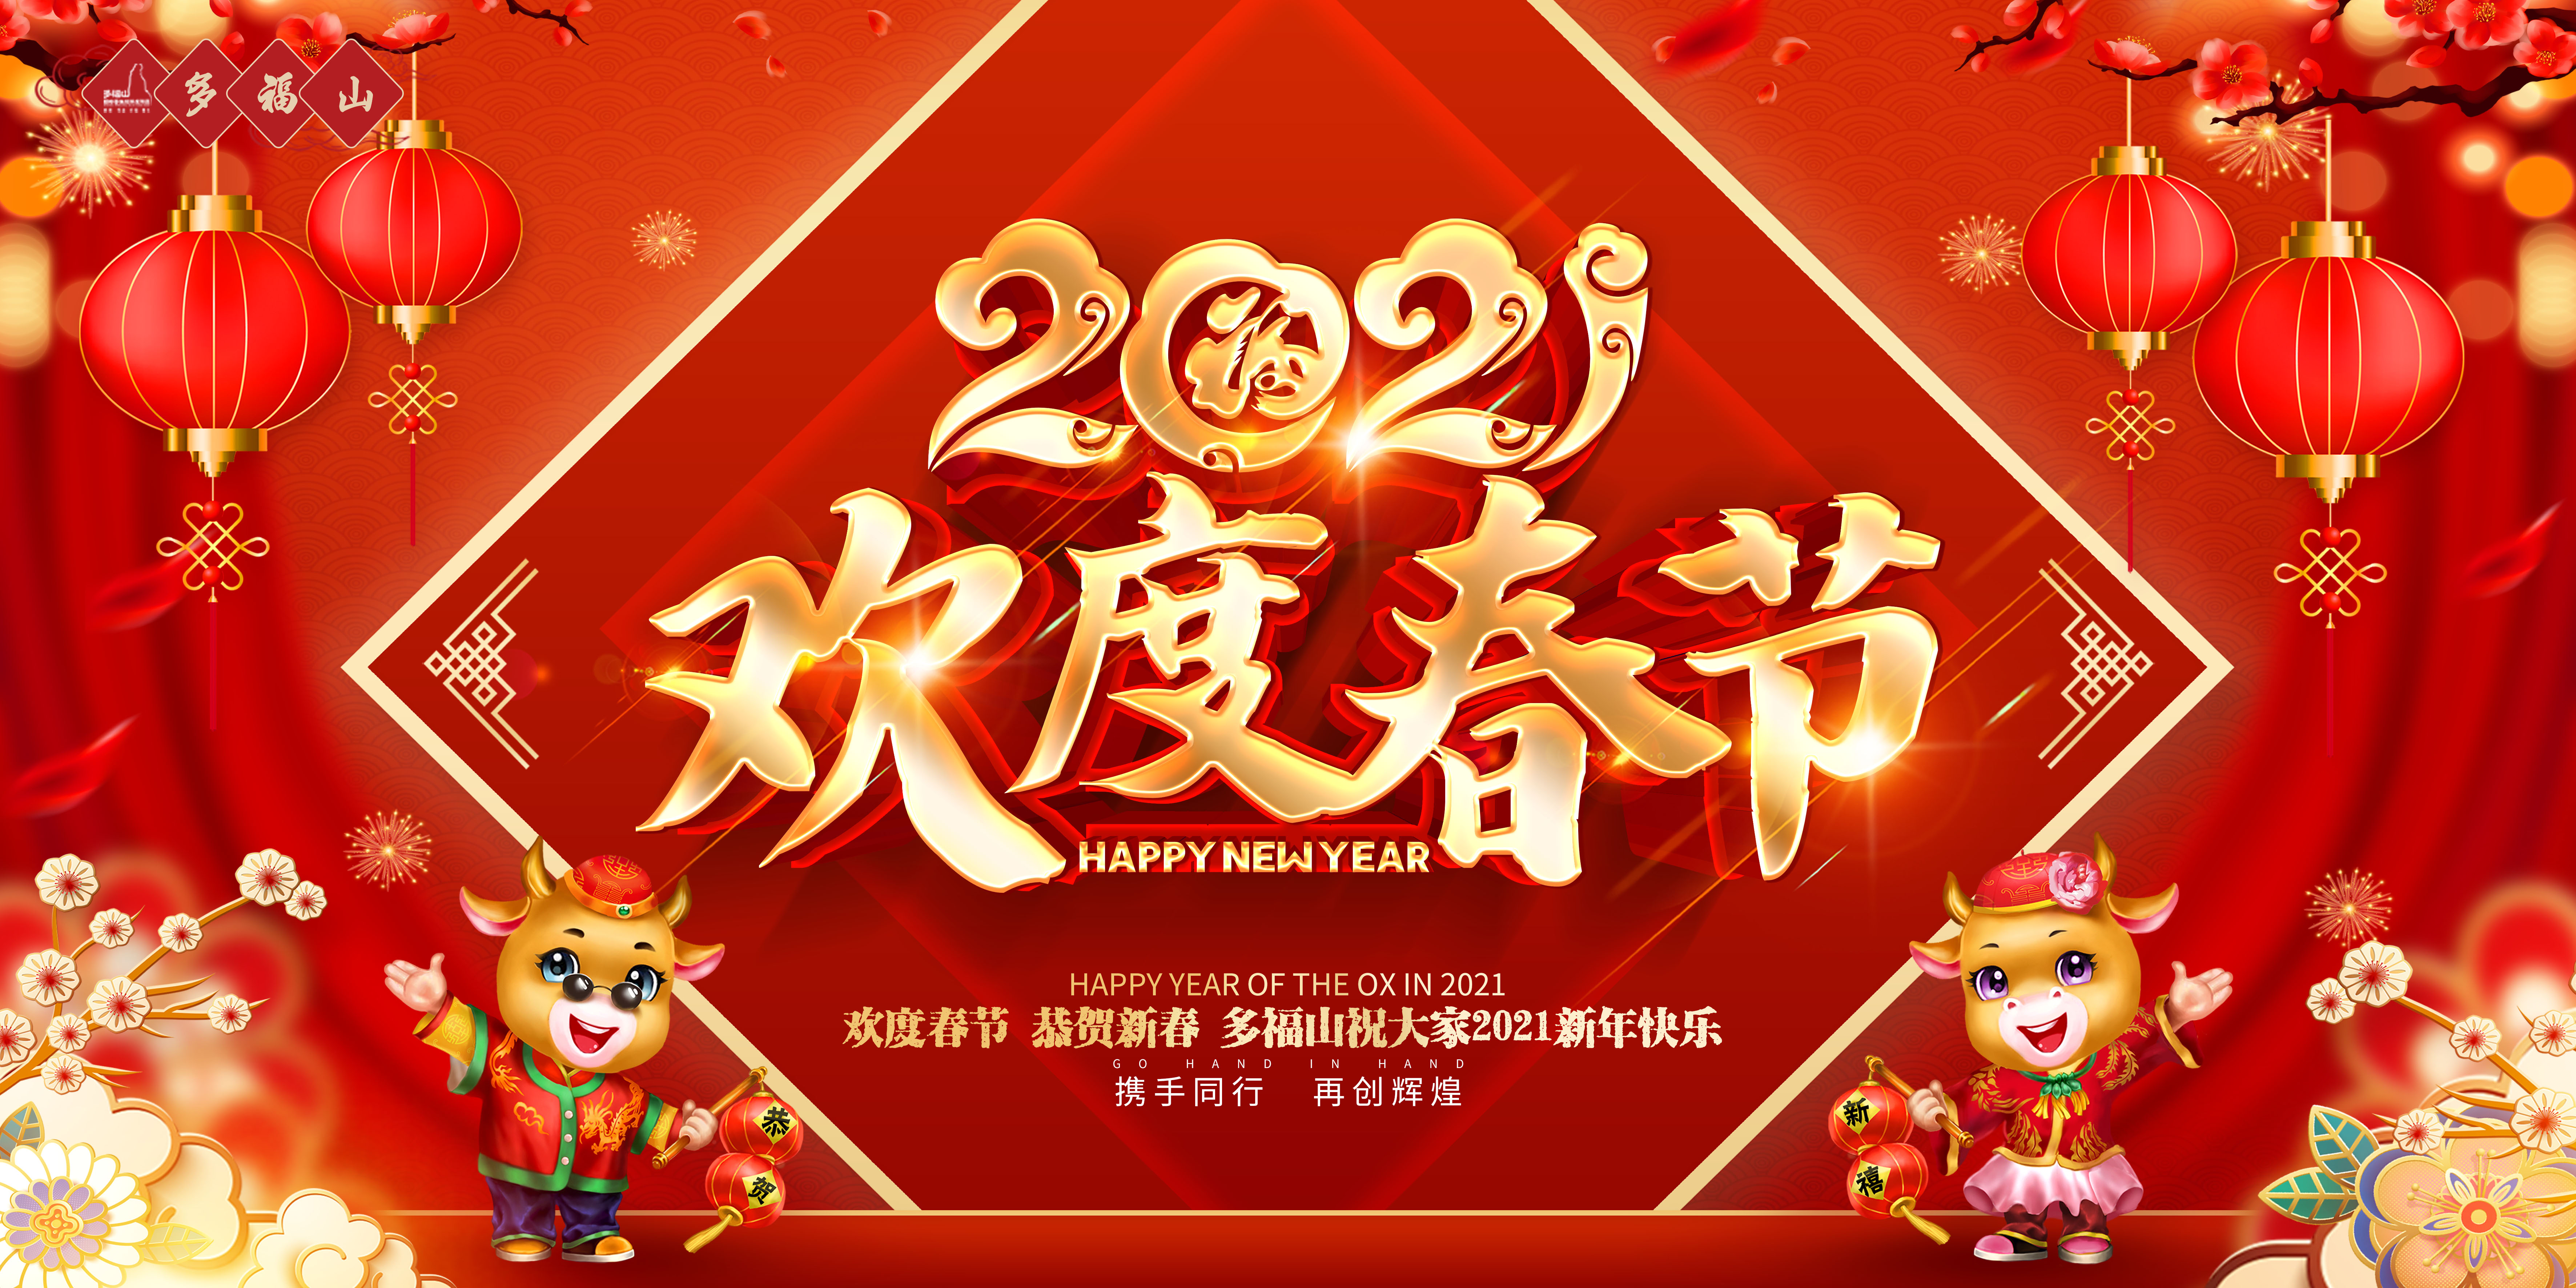 多福山恭祝全国人民新春快乐、福泰安康